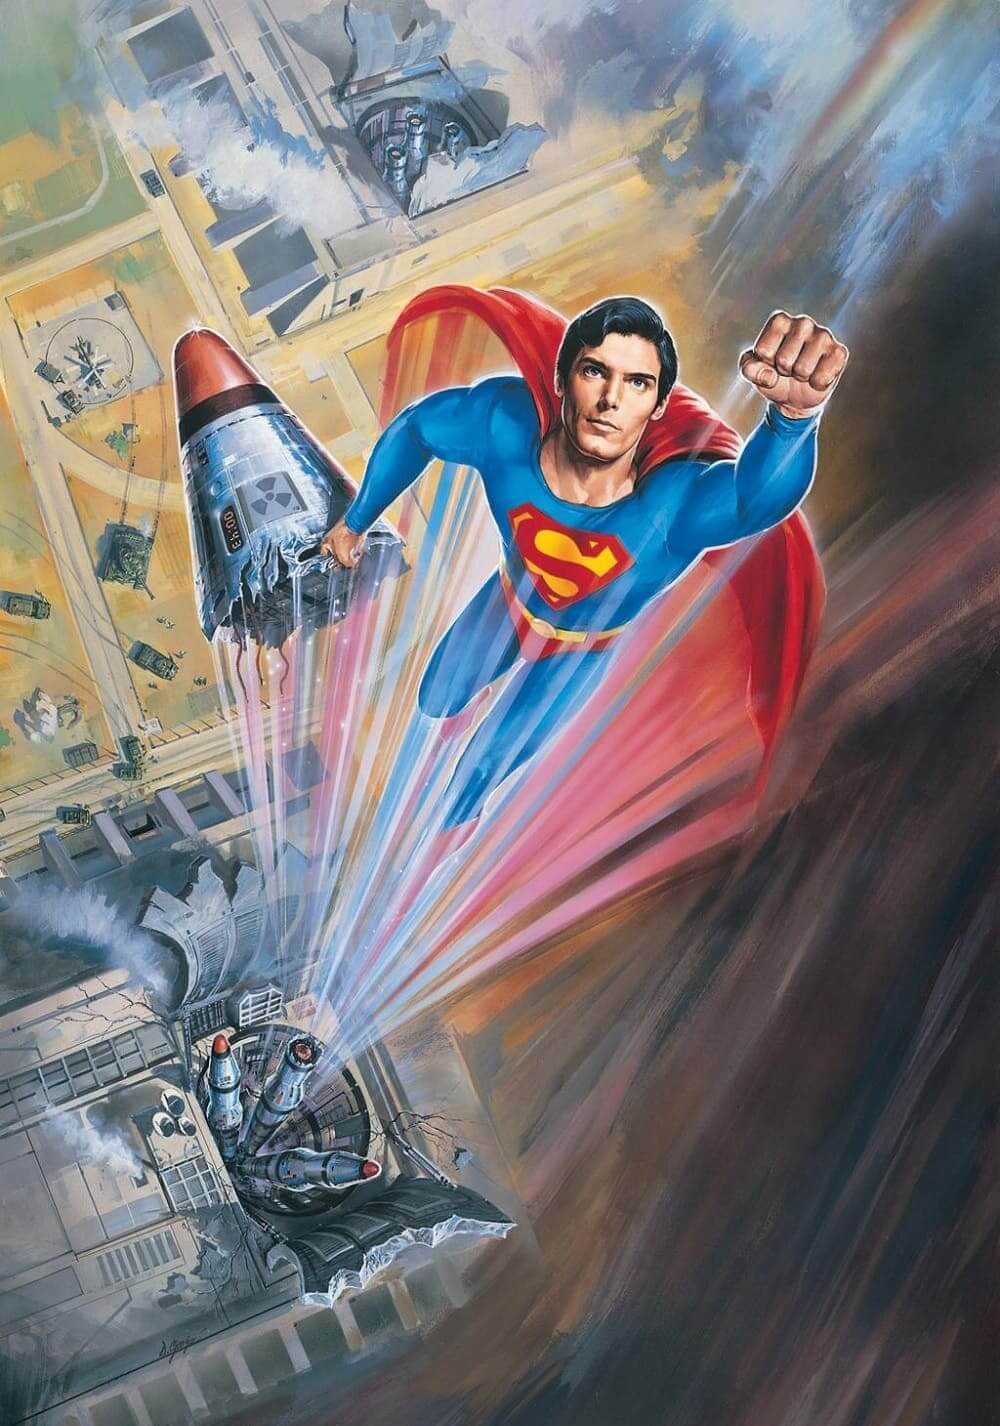 سوپرمن ۴: در جستجوی صلح (Superman IV: The Quest for Peace)